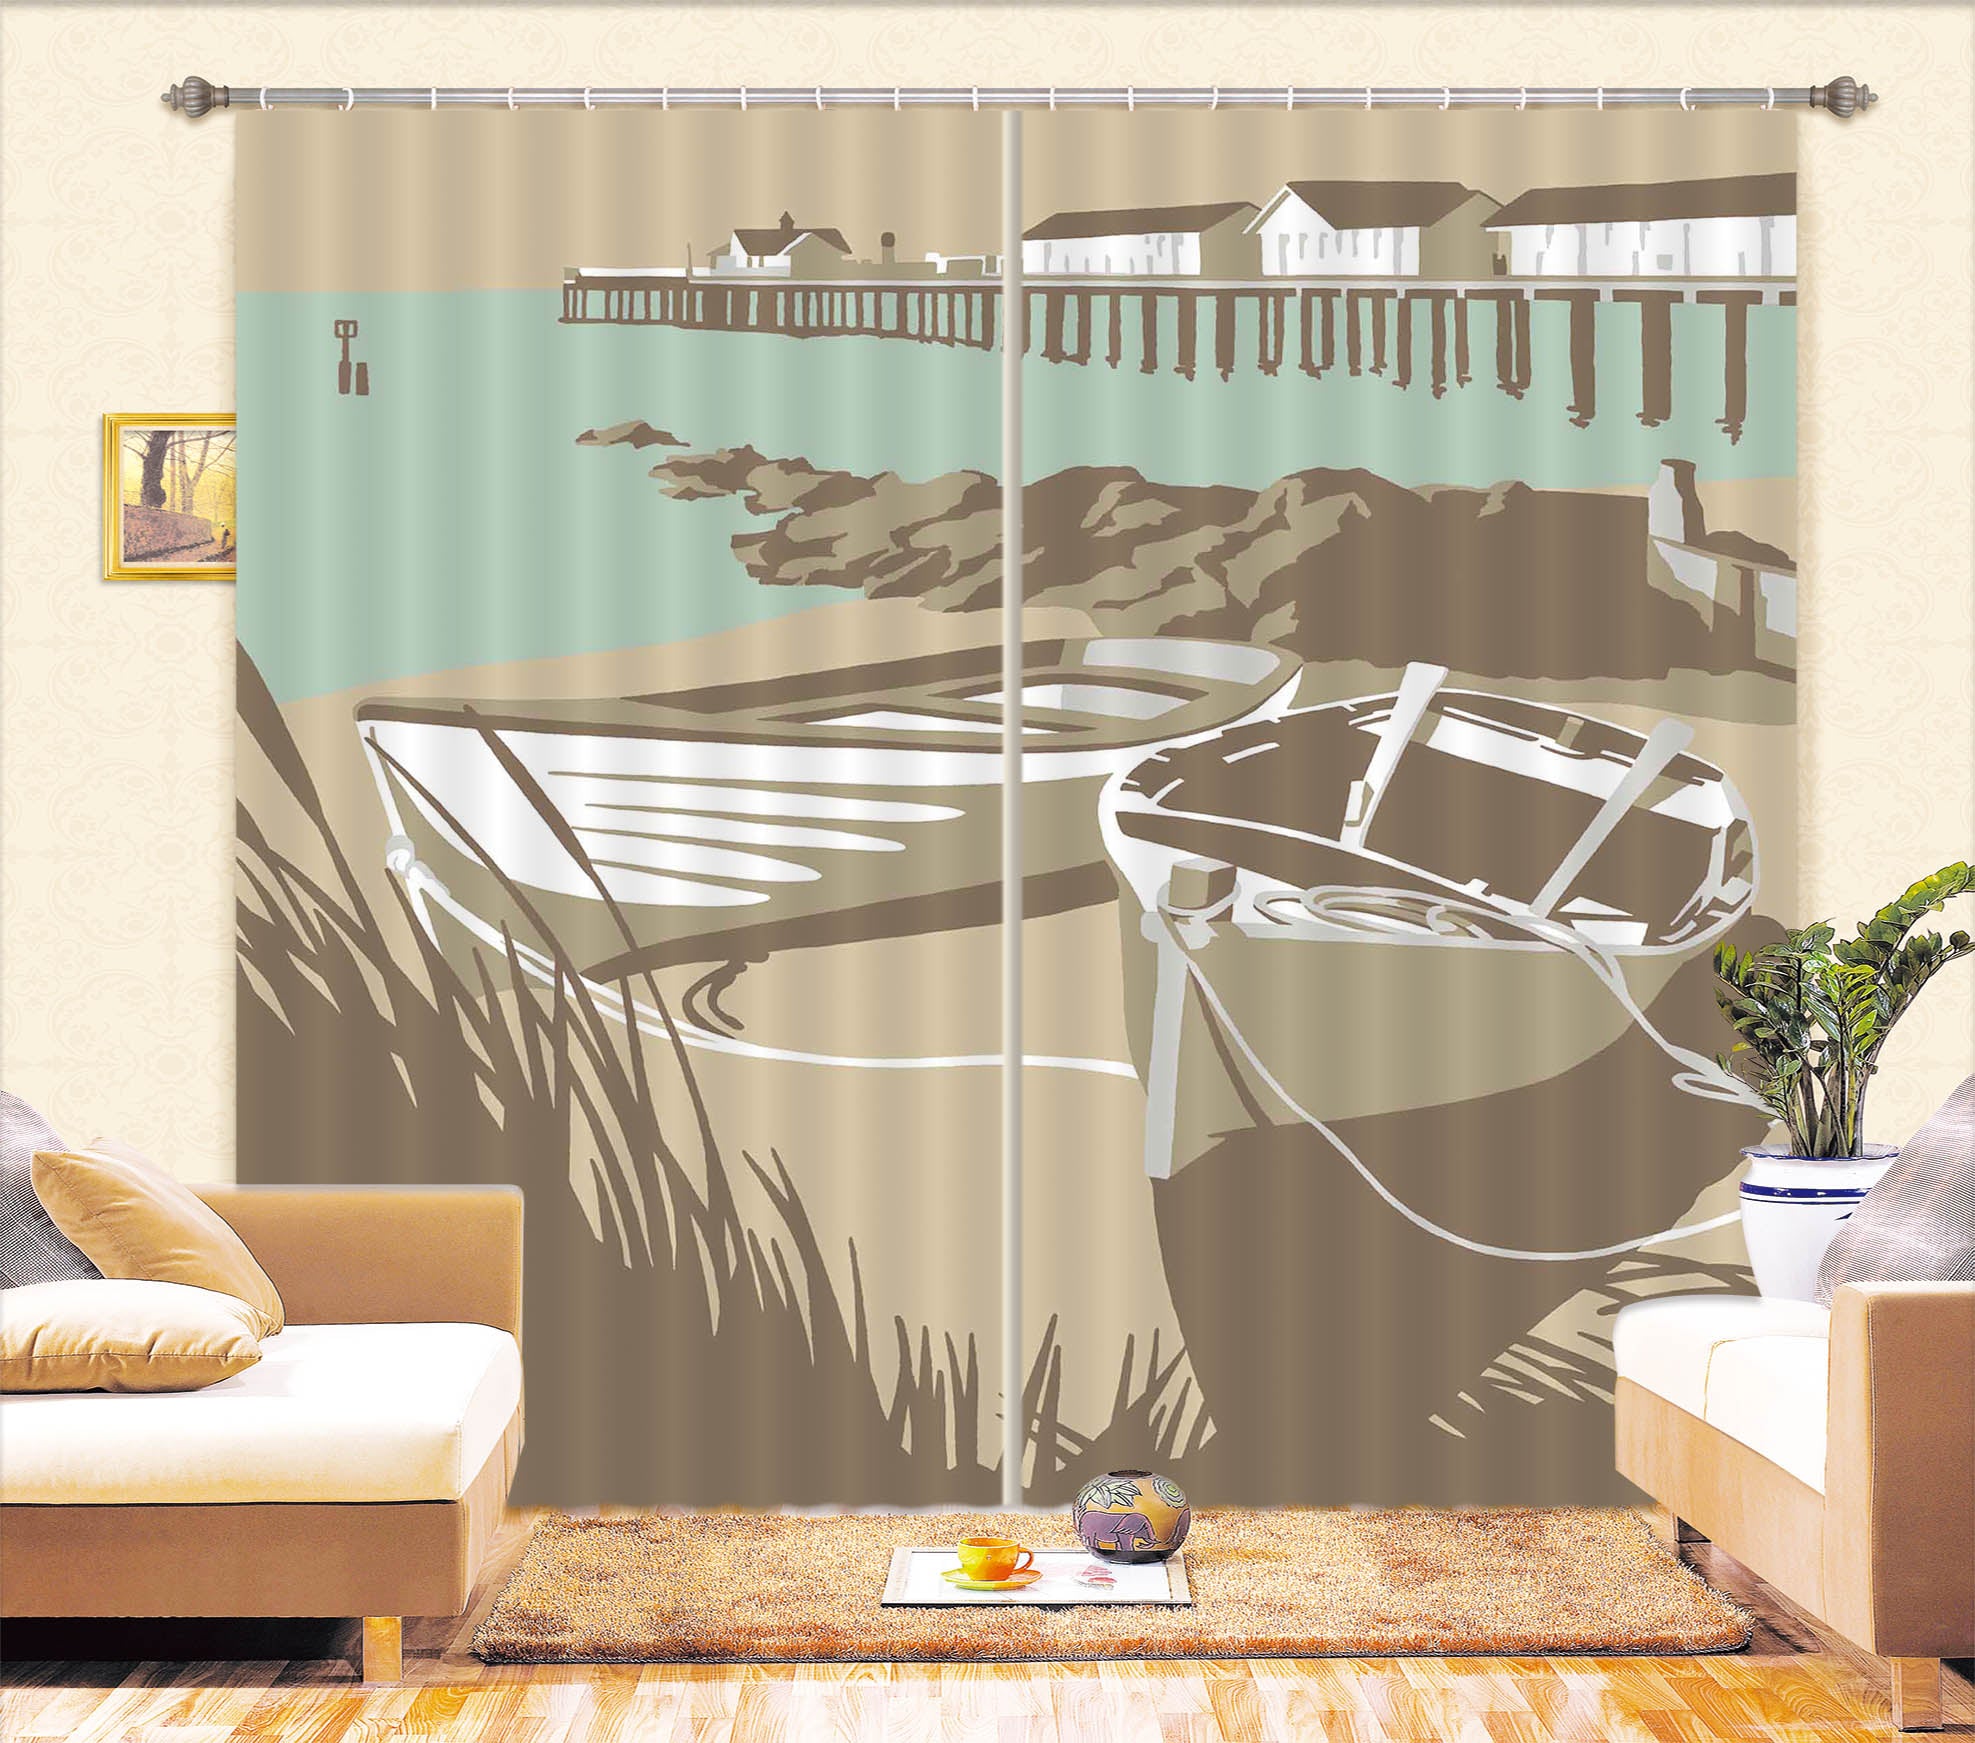 3D Southwold Boats Pier 149 Steve Read Curtain Curtains Drapes